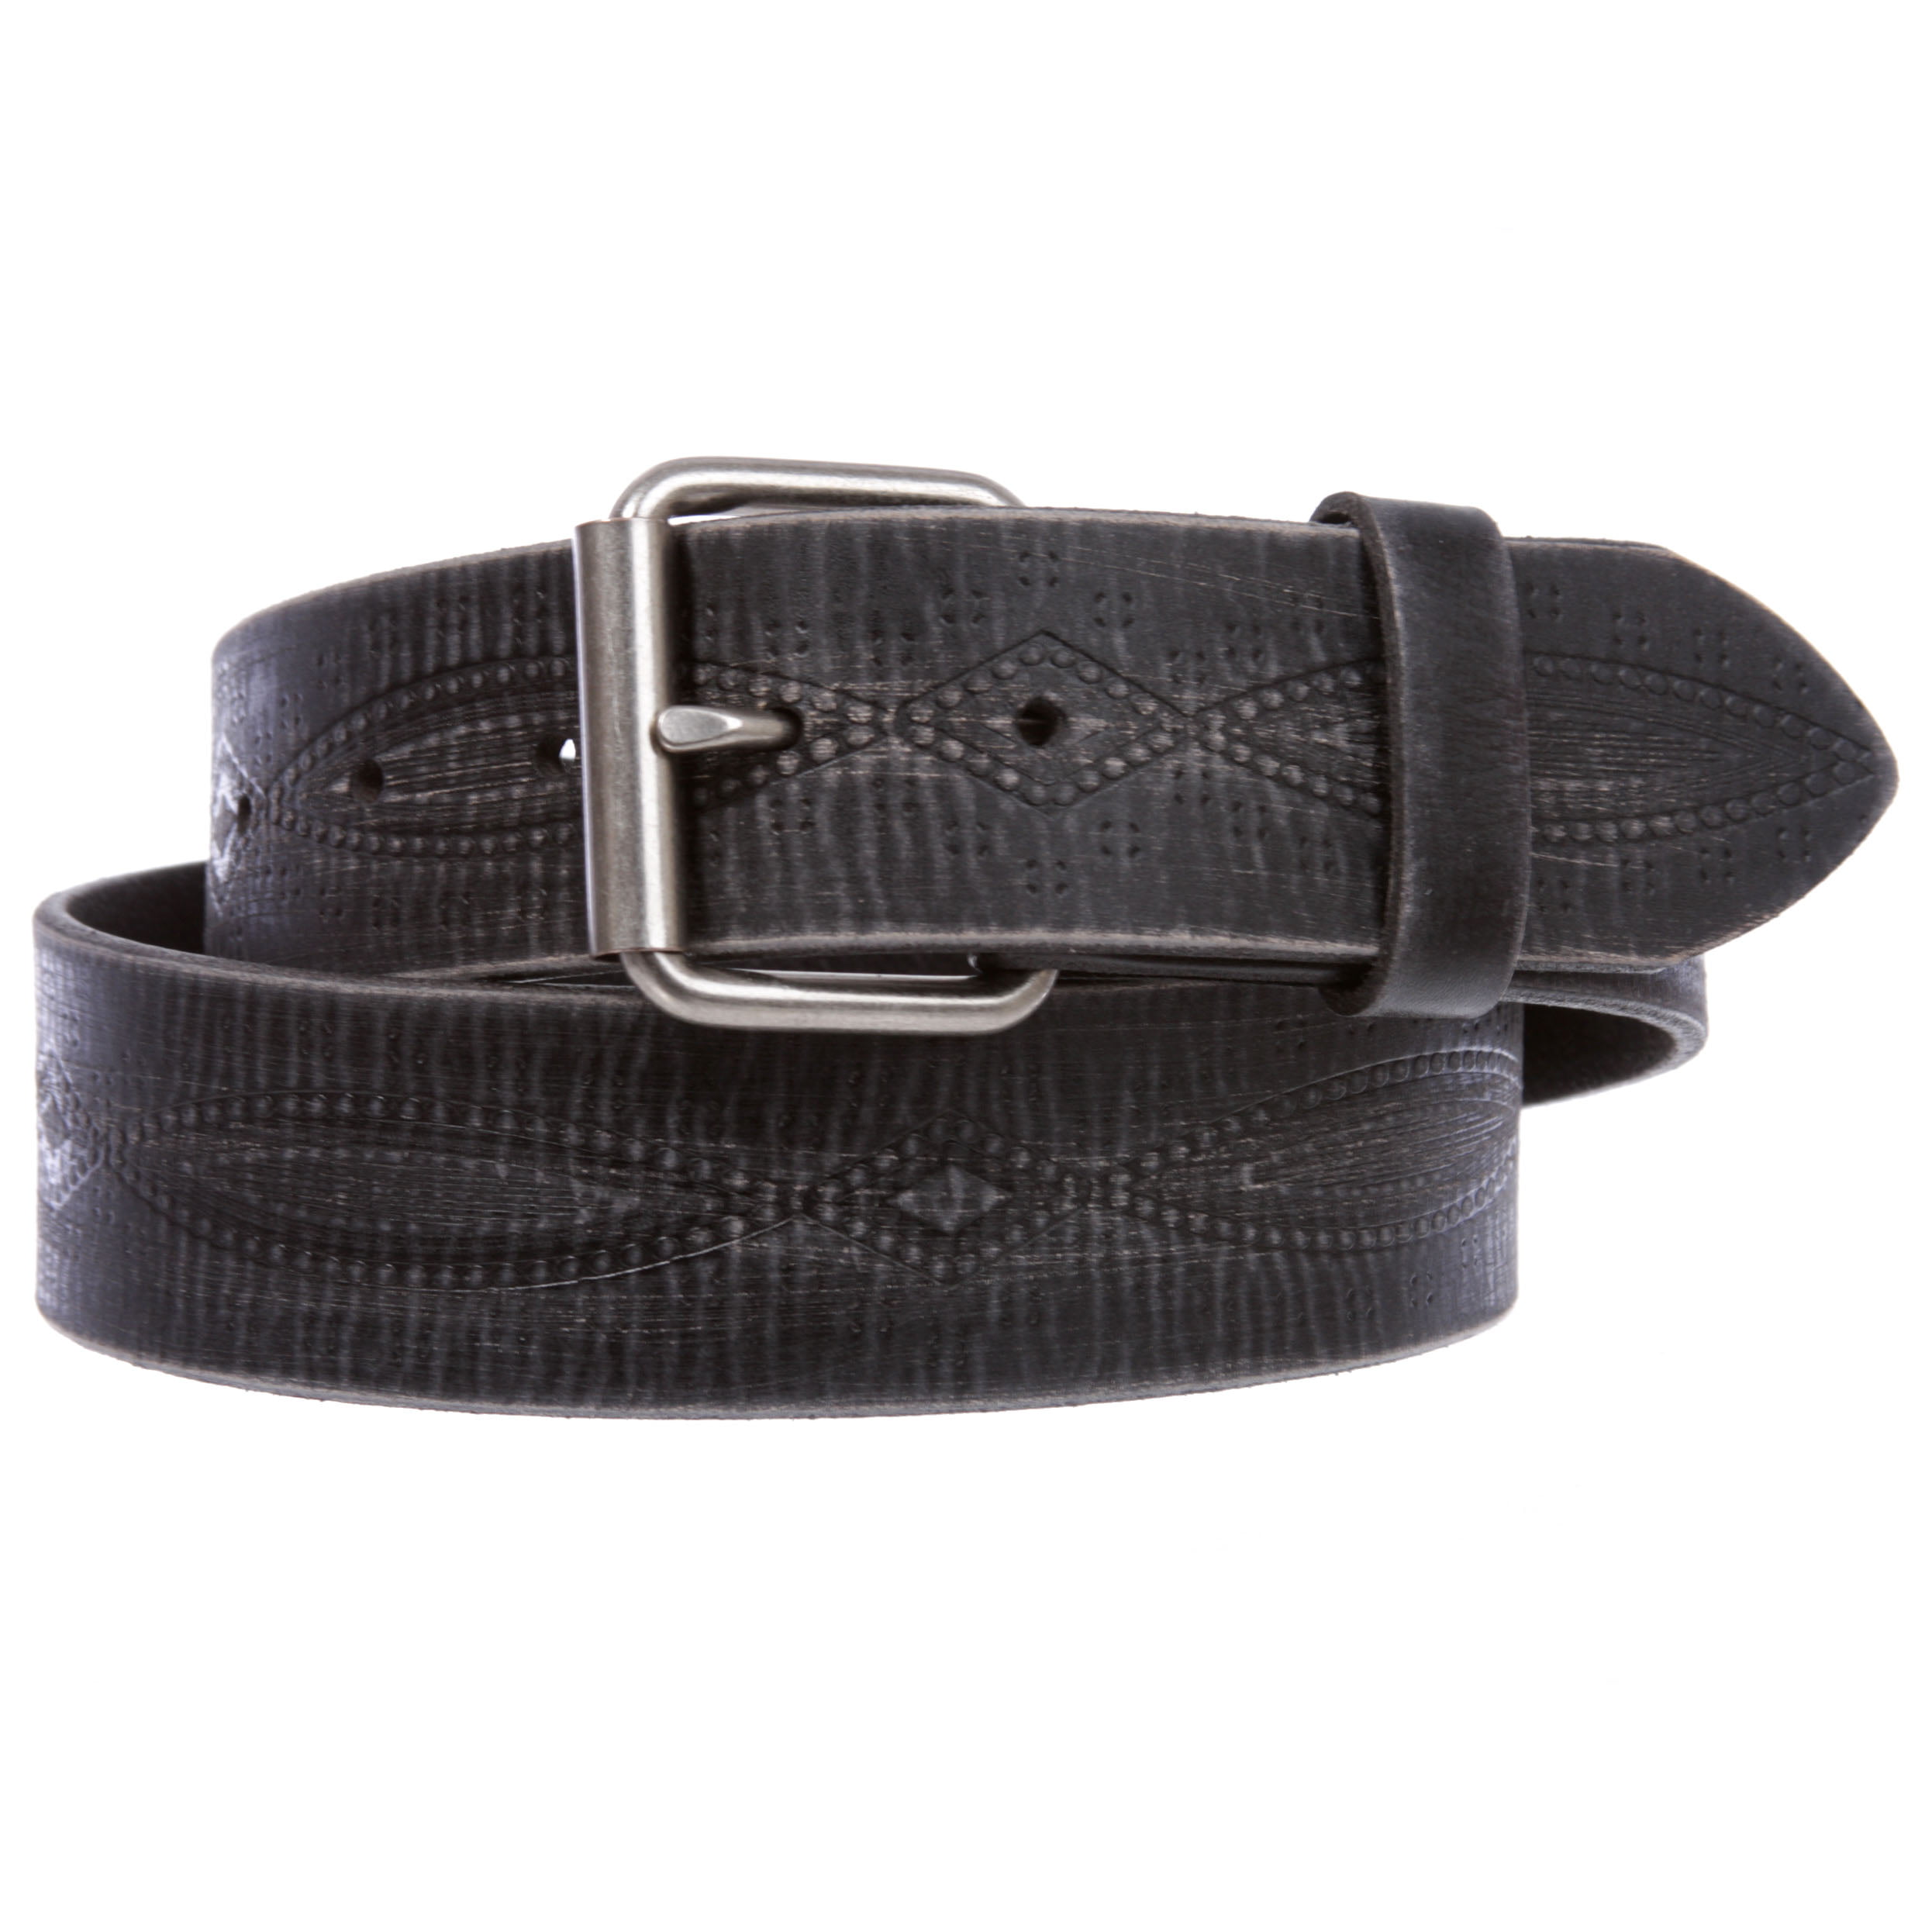 Men's Leather Belt Adjustable Vintage Genuine Leather Casual Belt 1-3/8" Wide 